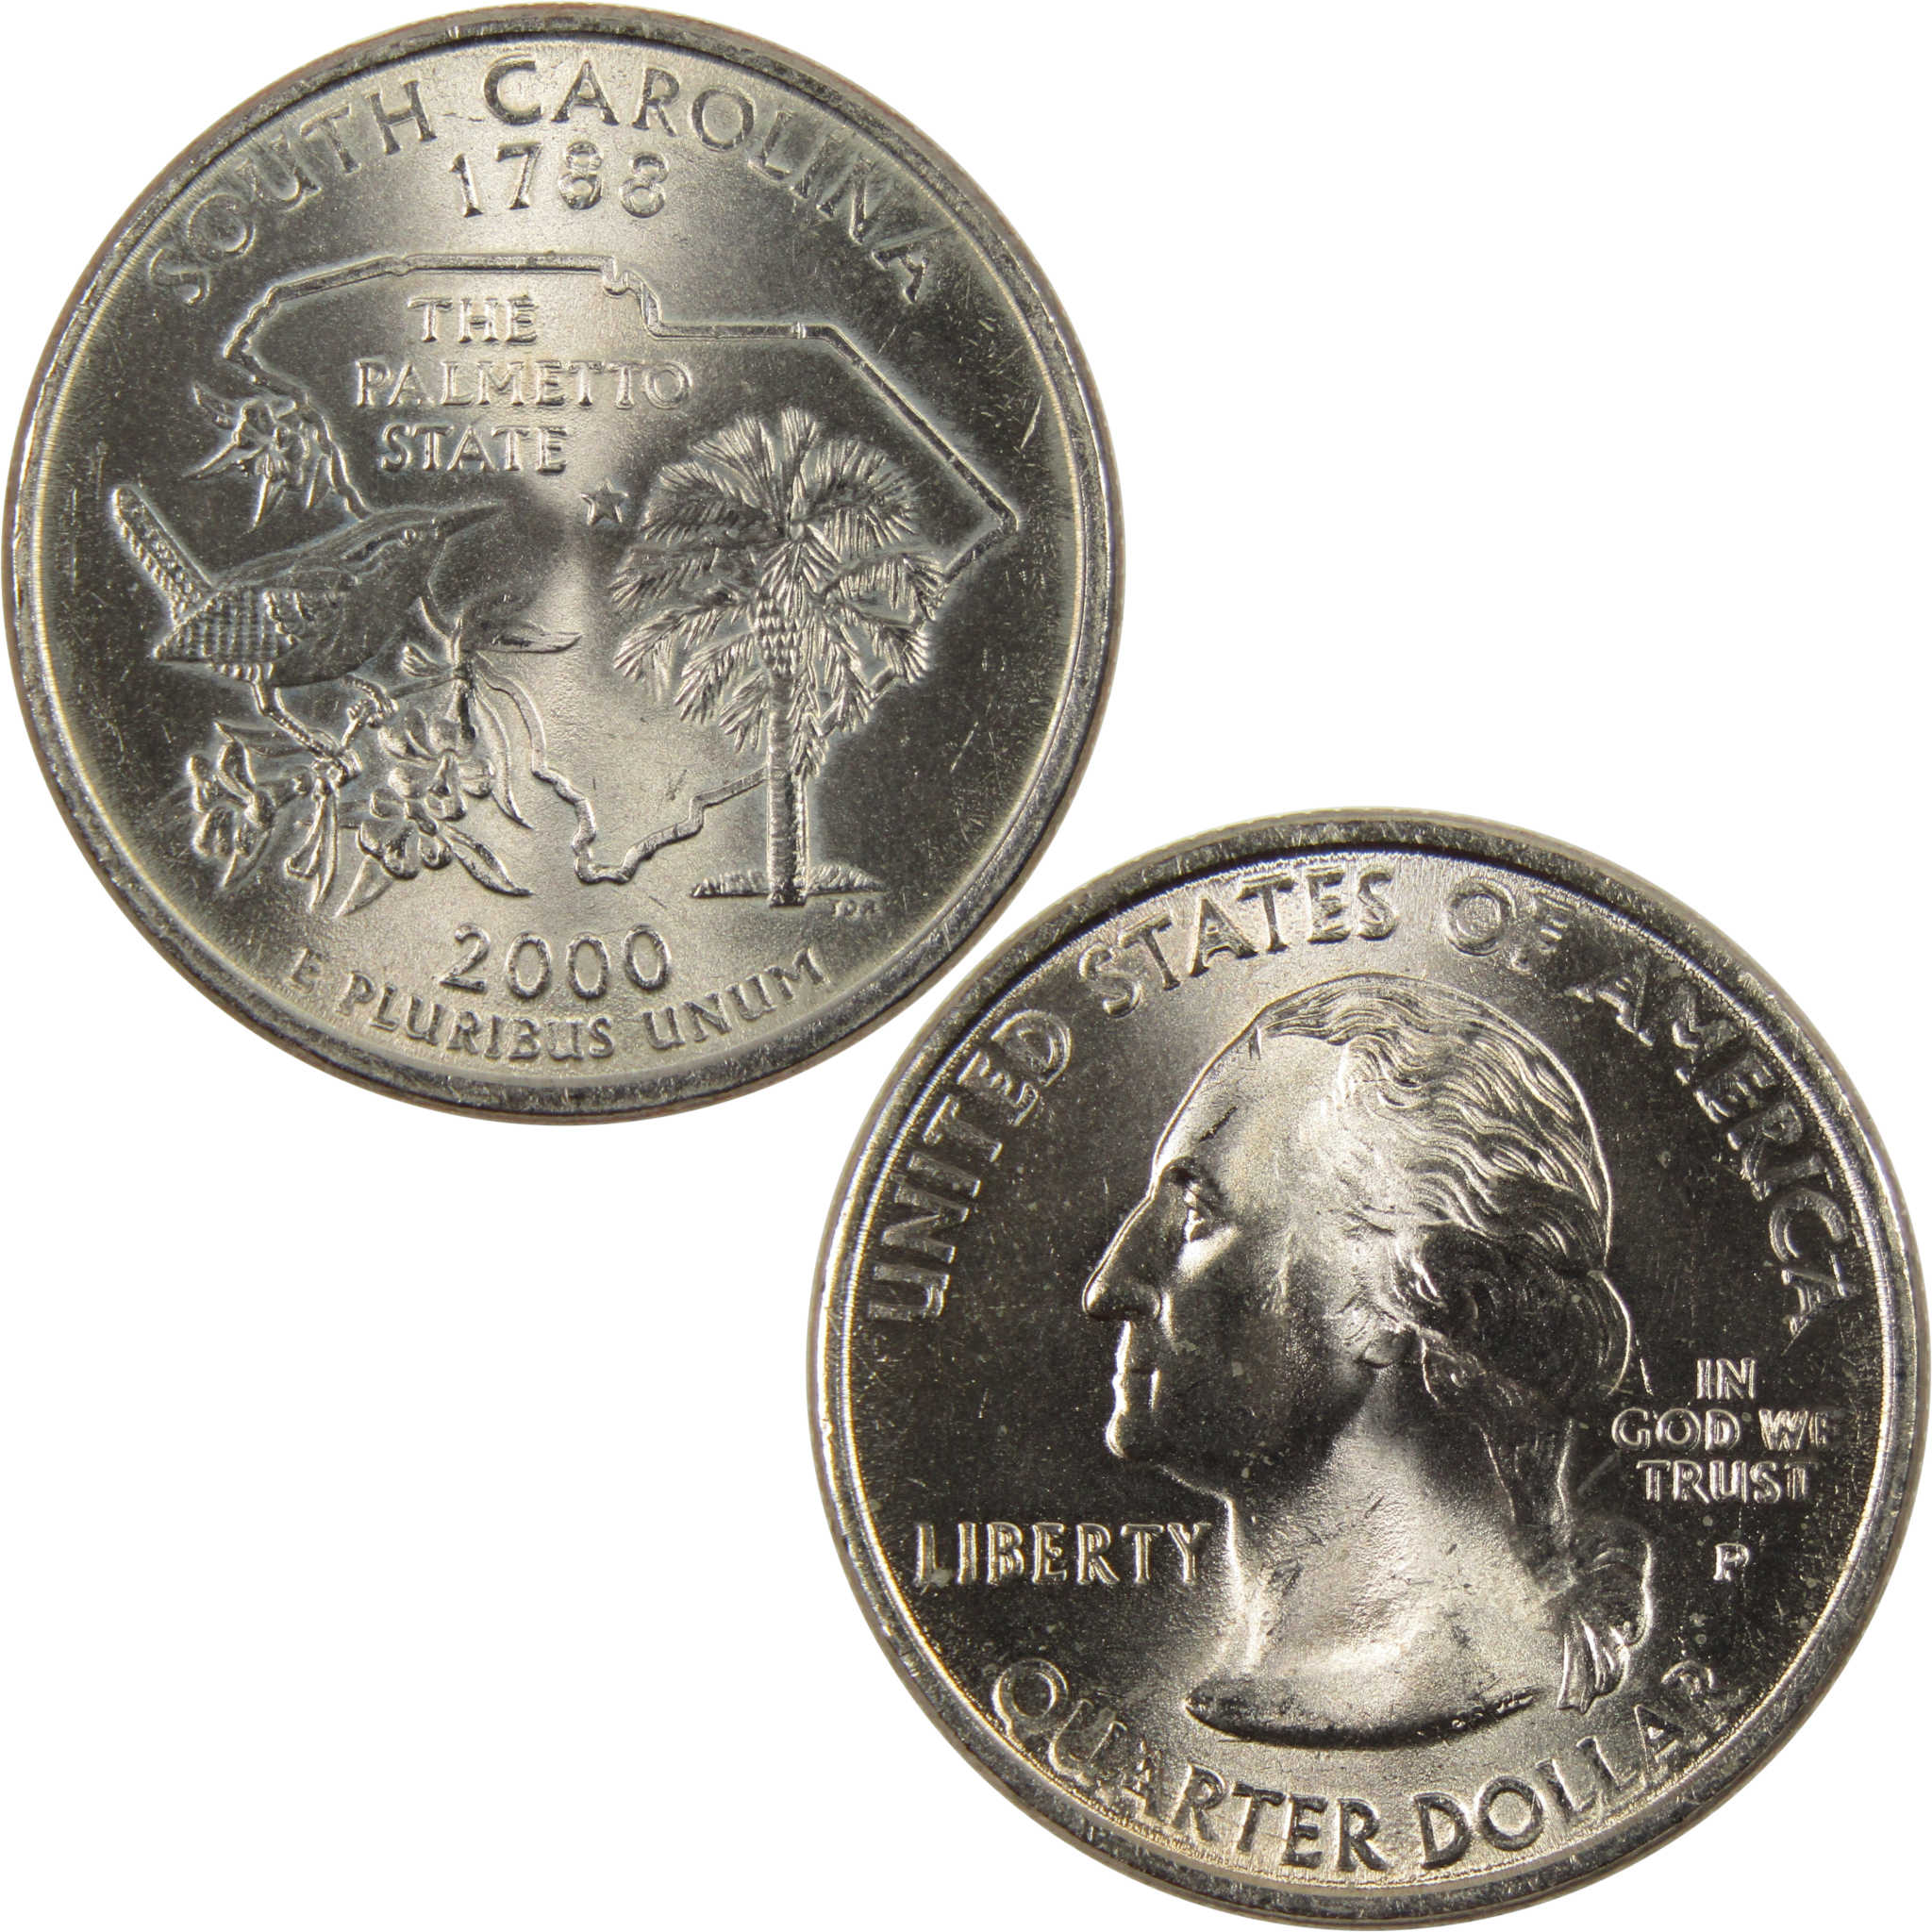 2000 P South Carolina State Quarter BU Uncirculated Clad 25c Coin